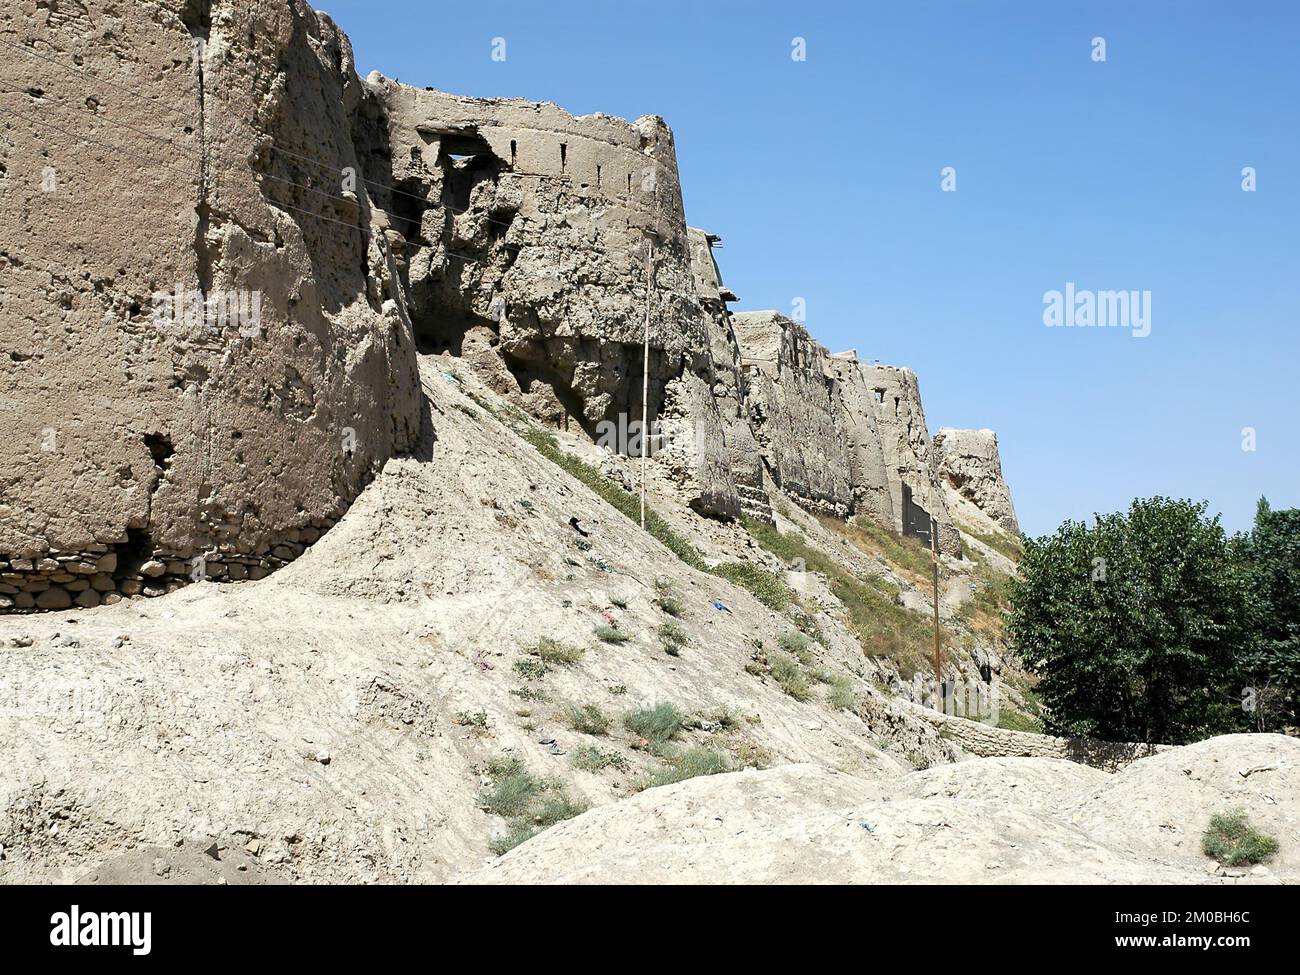 Die Mauer der Zitadelle Ghazni in Ghazni, Afghanistan. Diese Verteidigungsmauer ist die Überreste einer großen historischen Festung aus einer alten ummauerten Stadt. Stockfoto